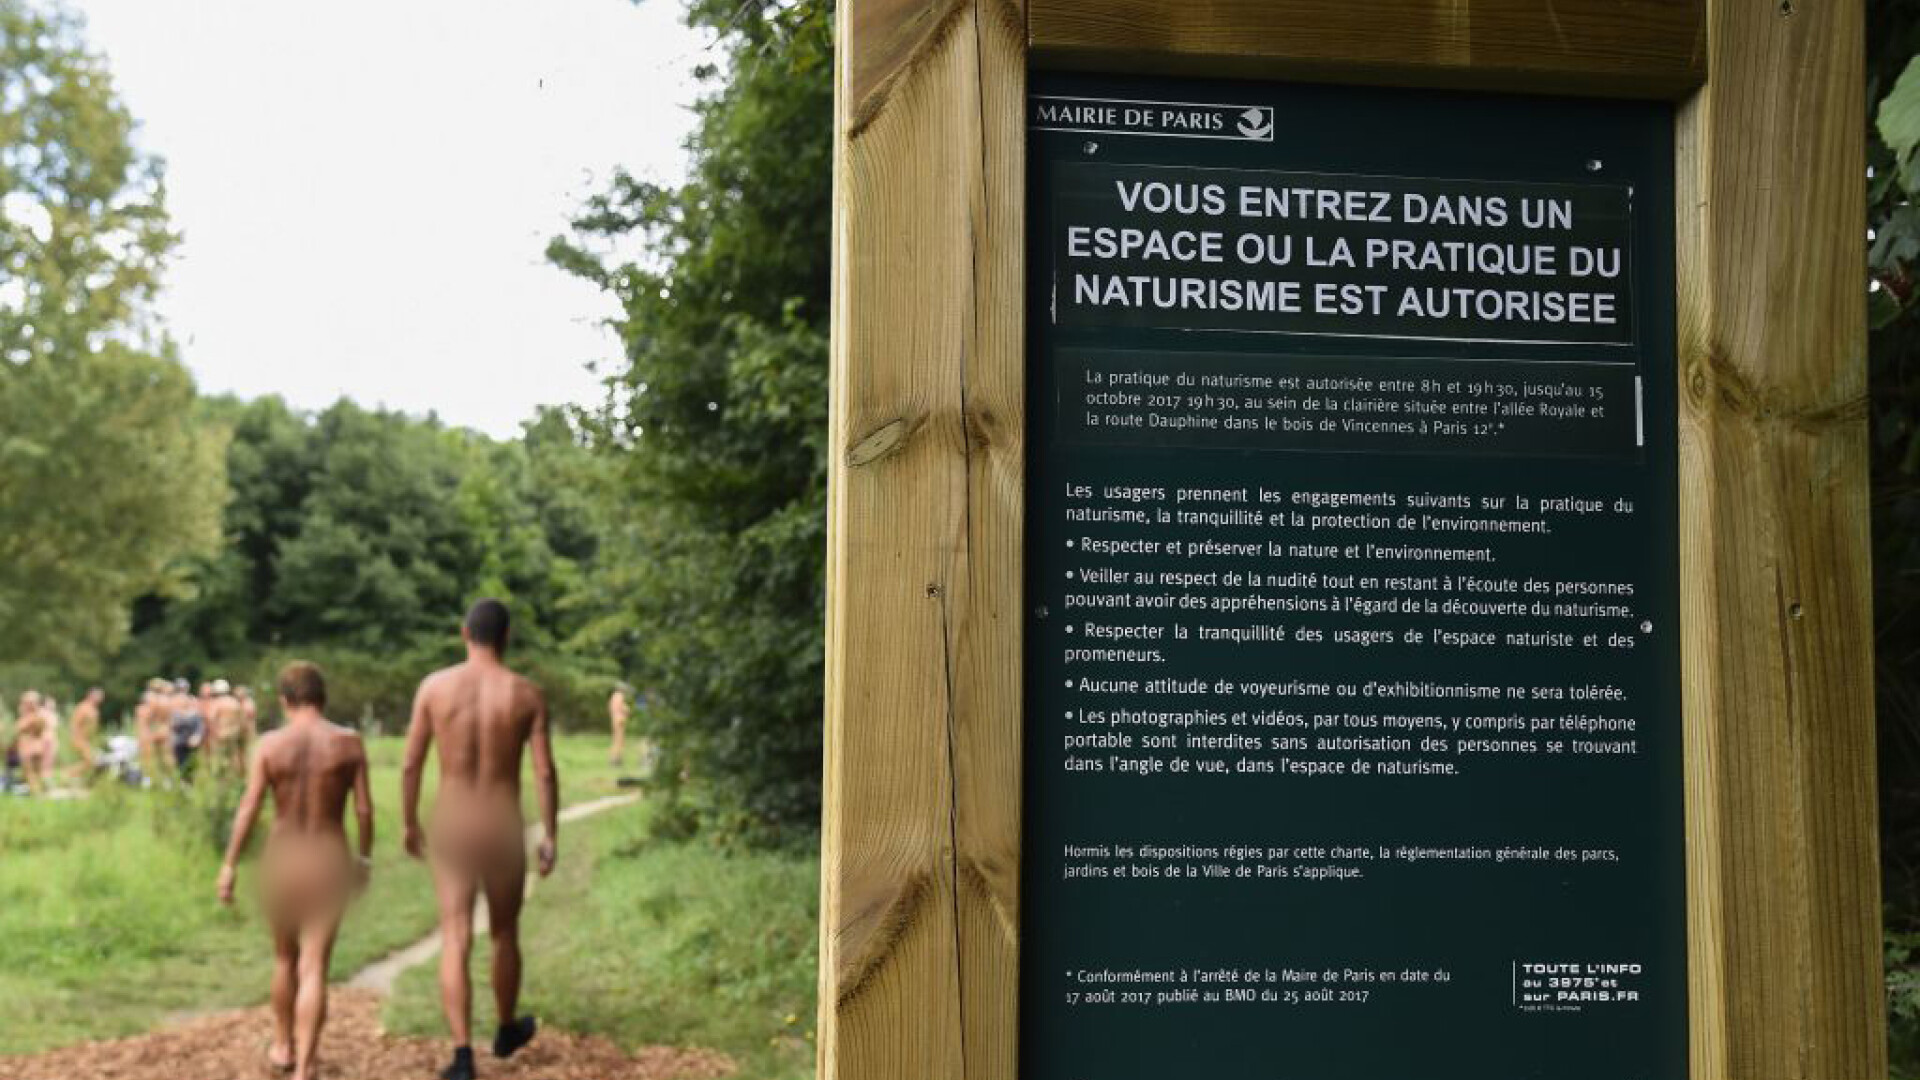 Nudisti intr-un parc din Paris - 4